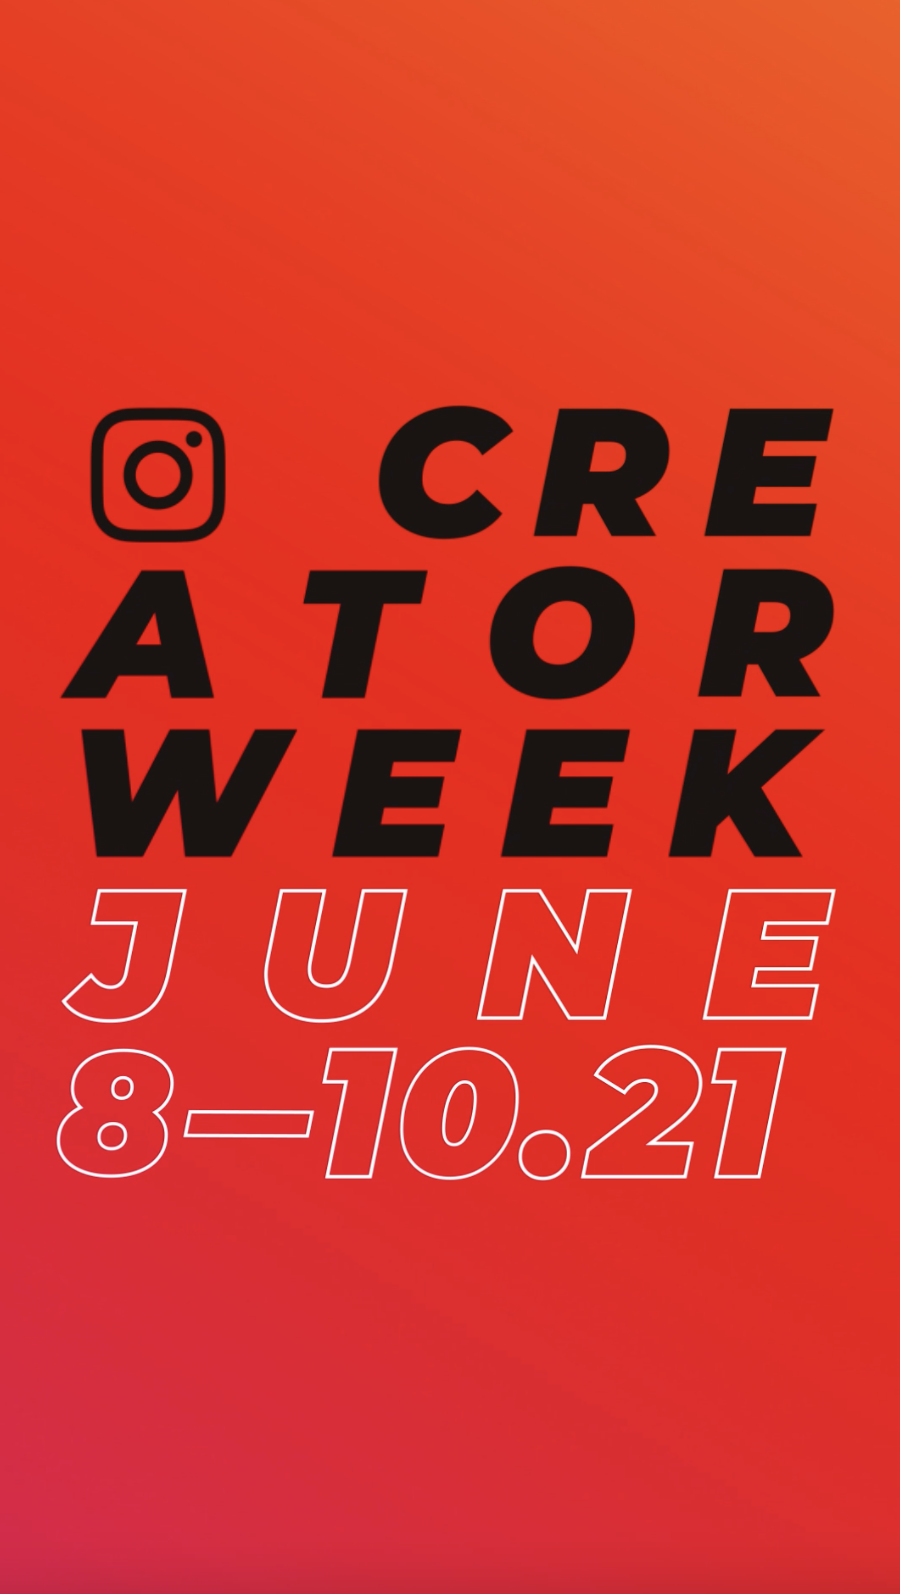 Instagram Creator Week